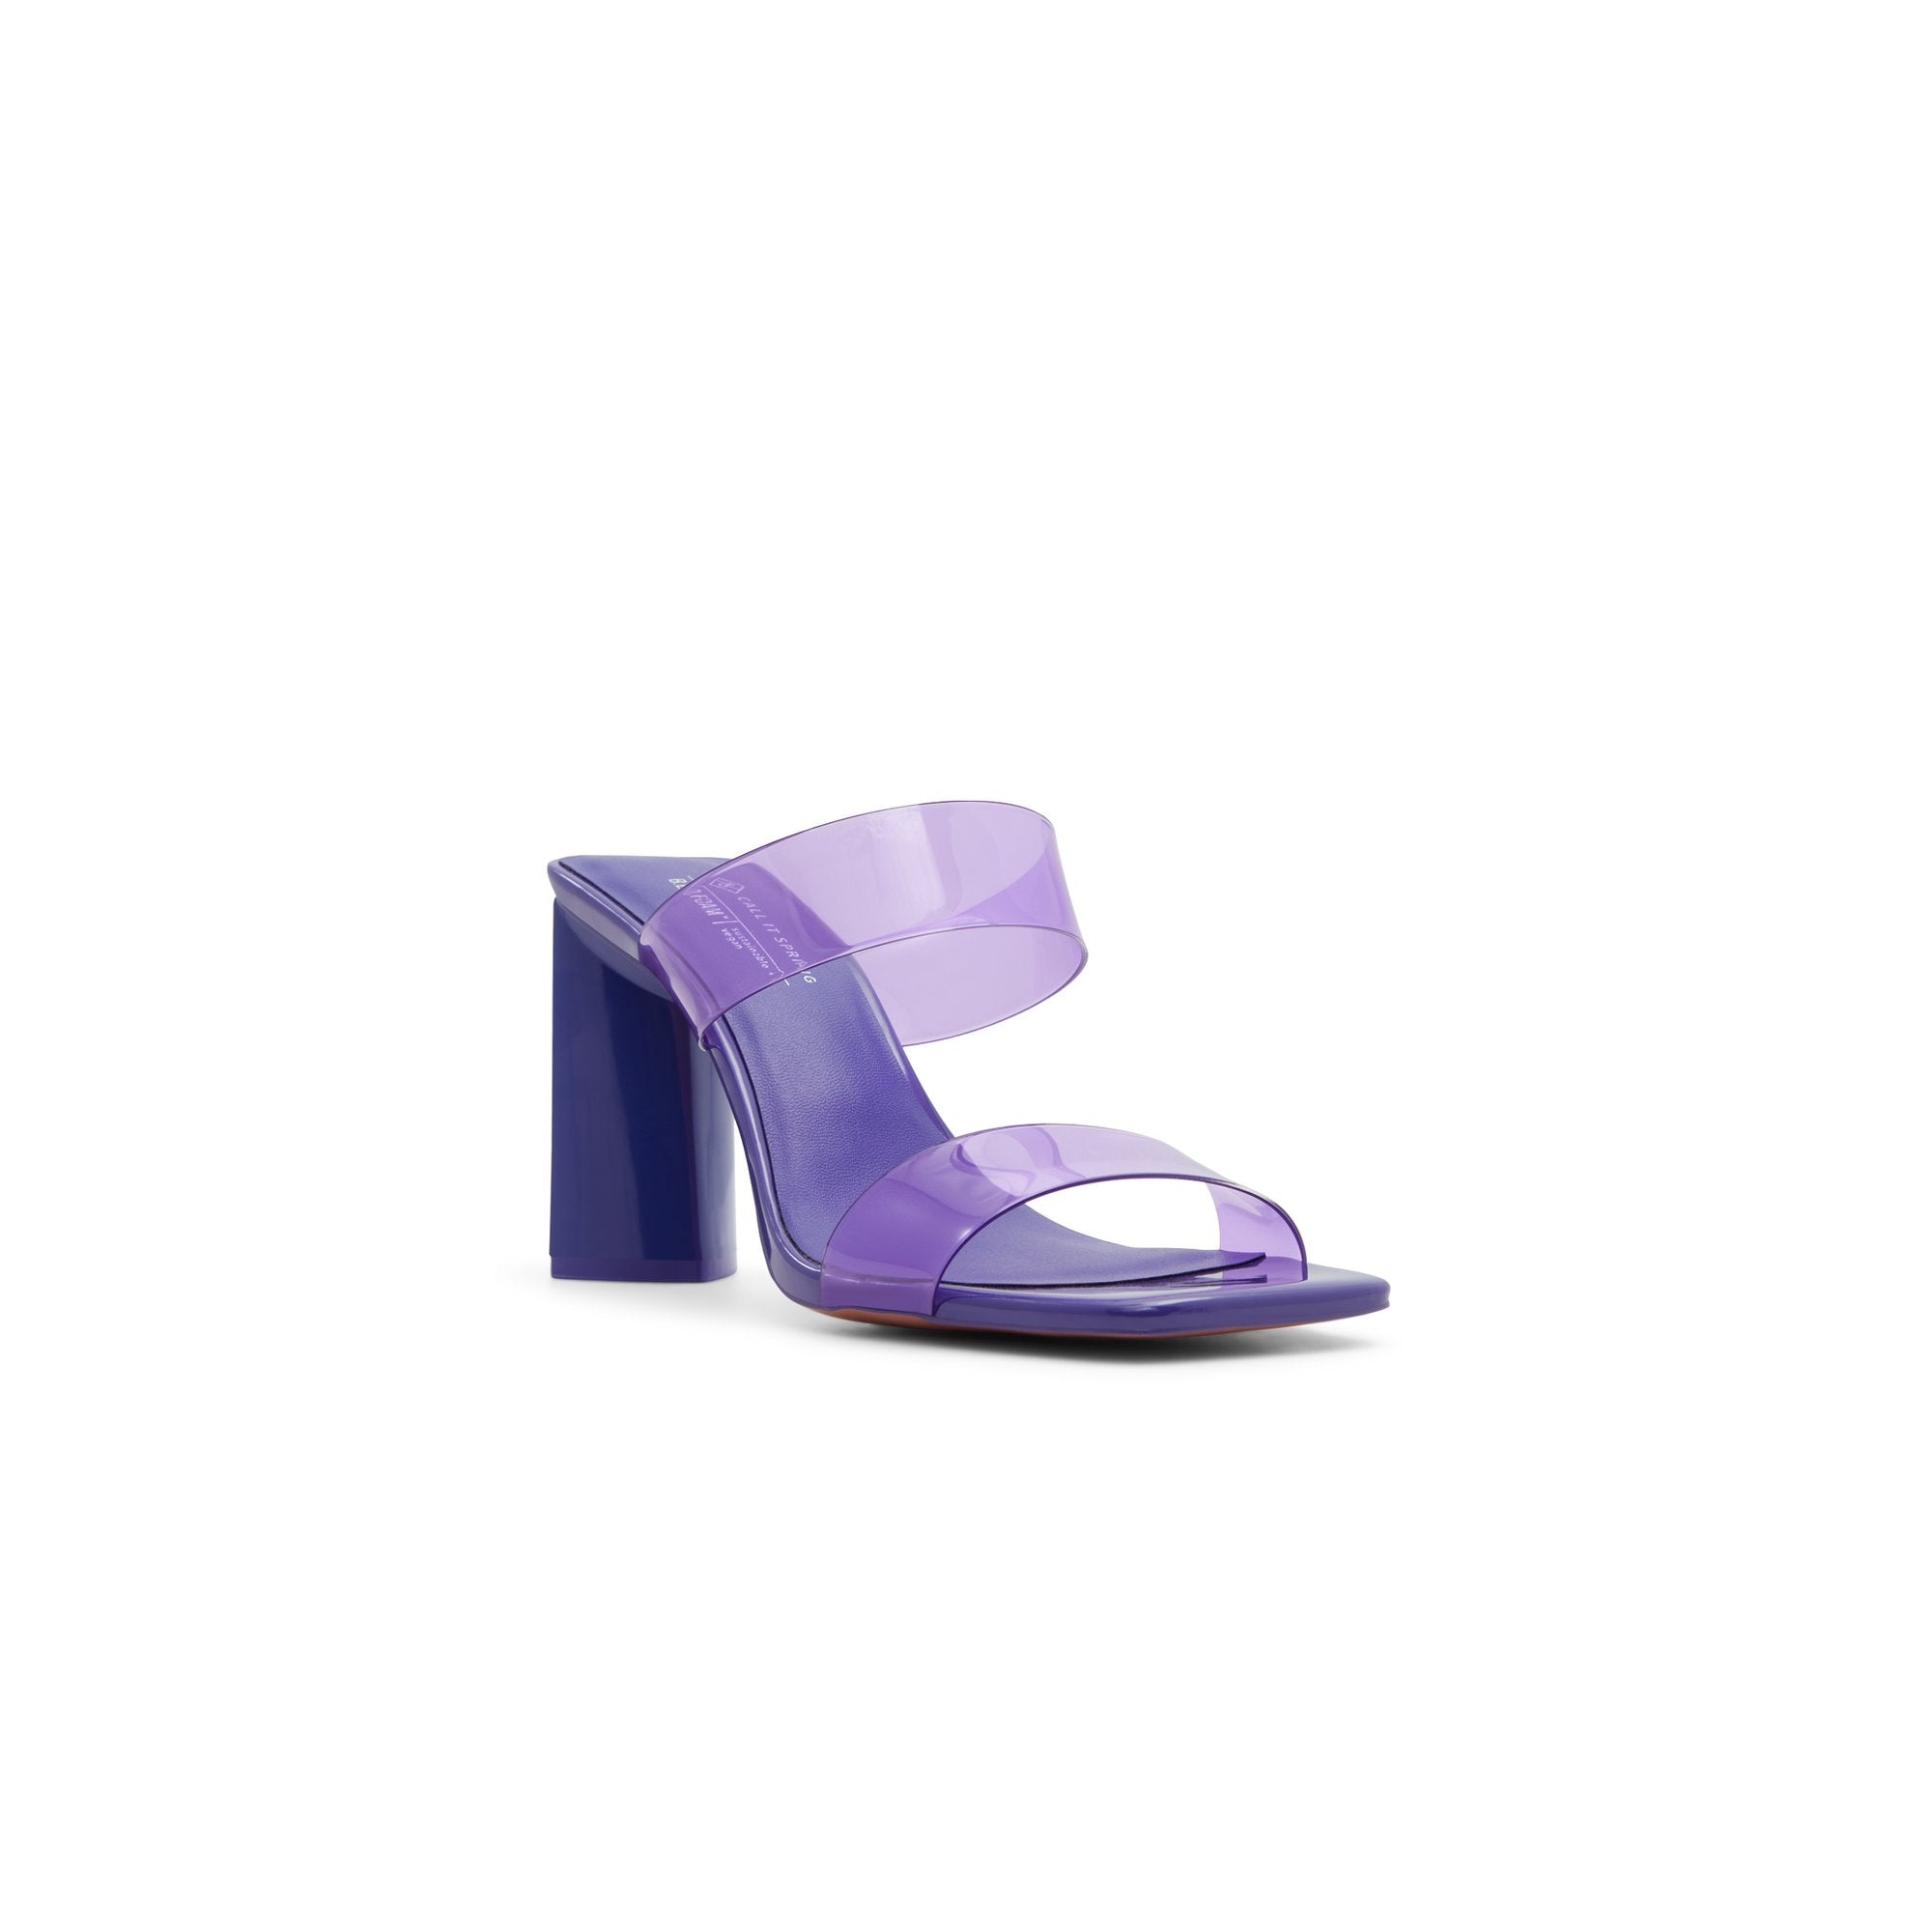 Buy FEET FLOW Women's Purple Heels Sandles 6 UK at Amazon.in